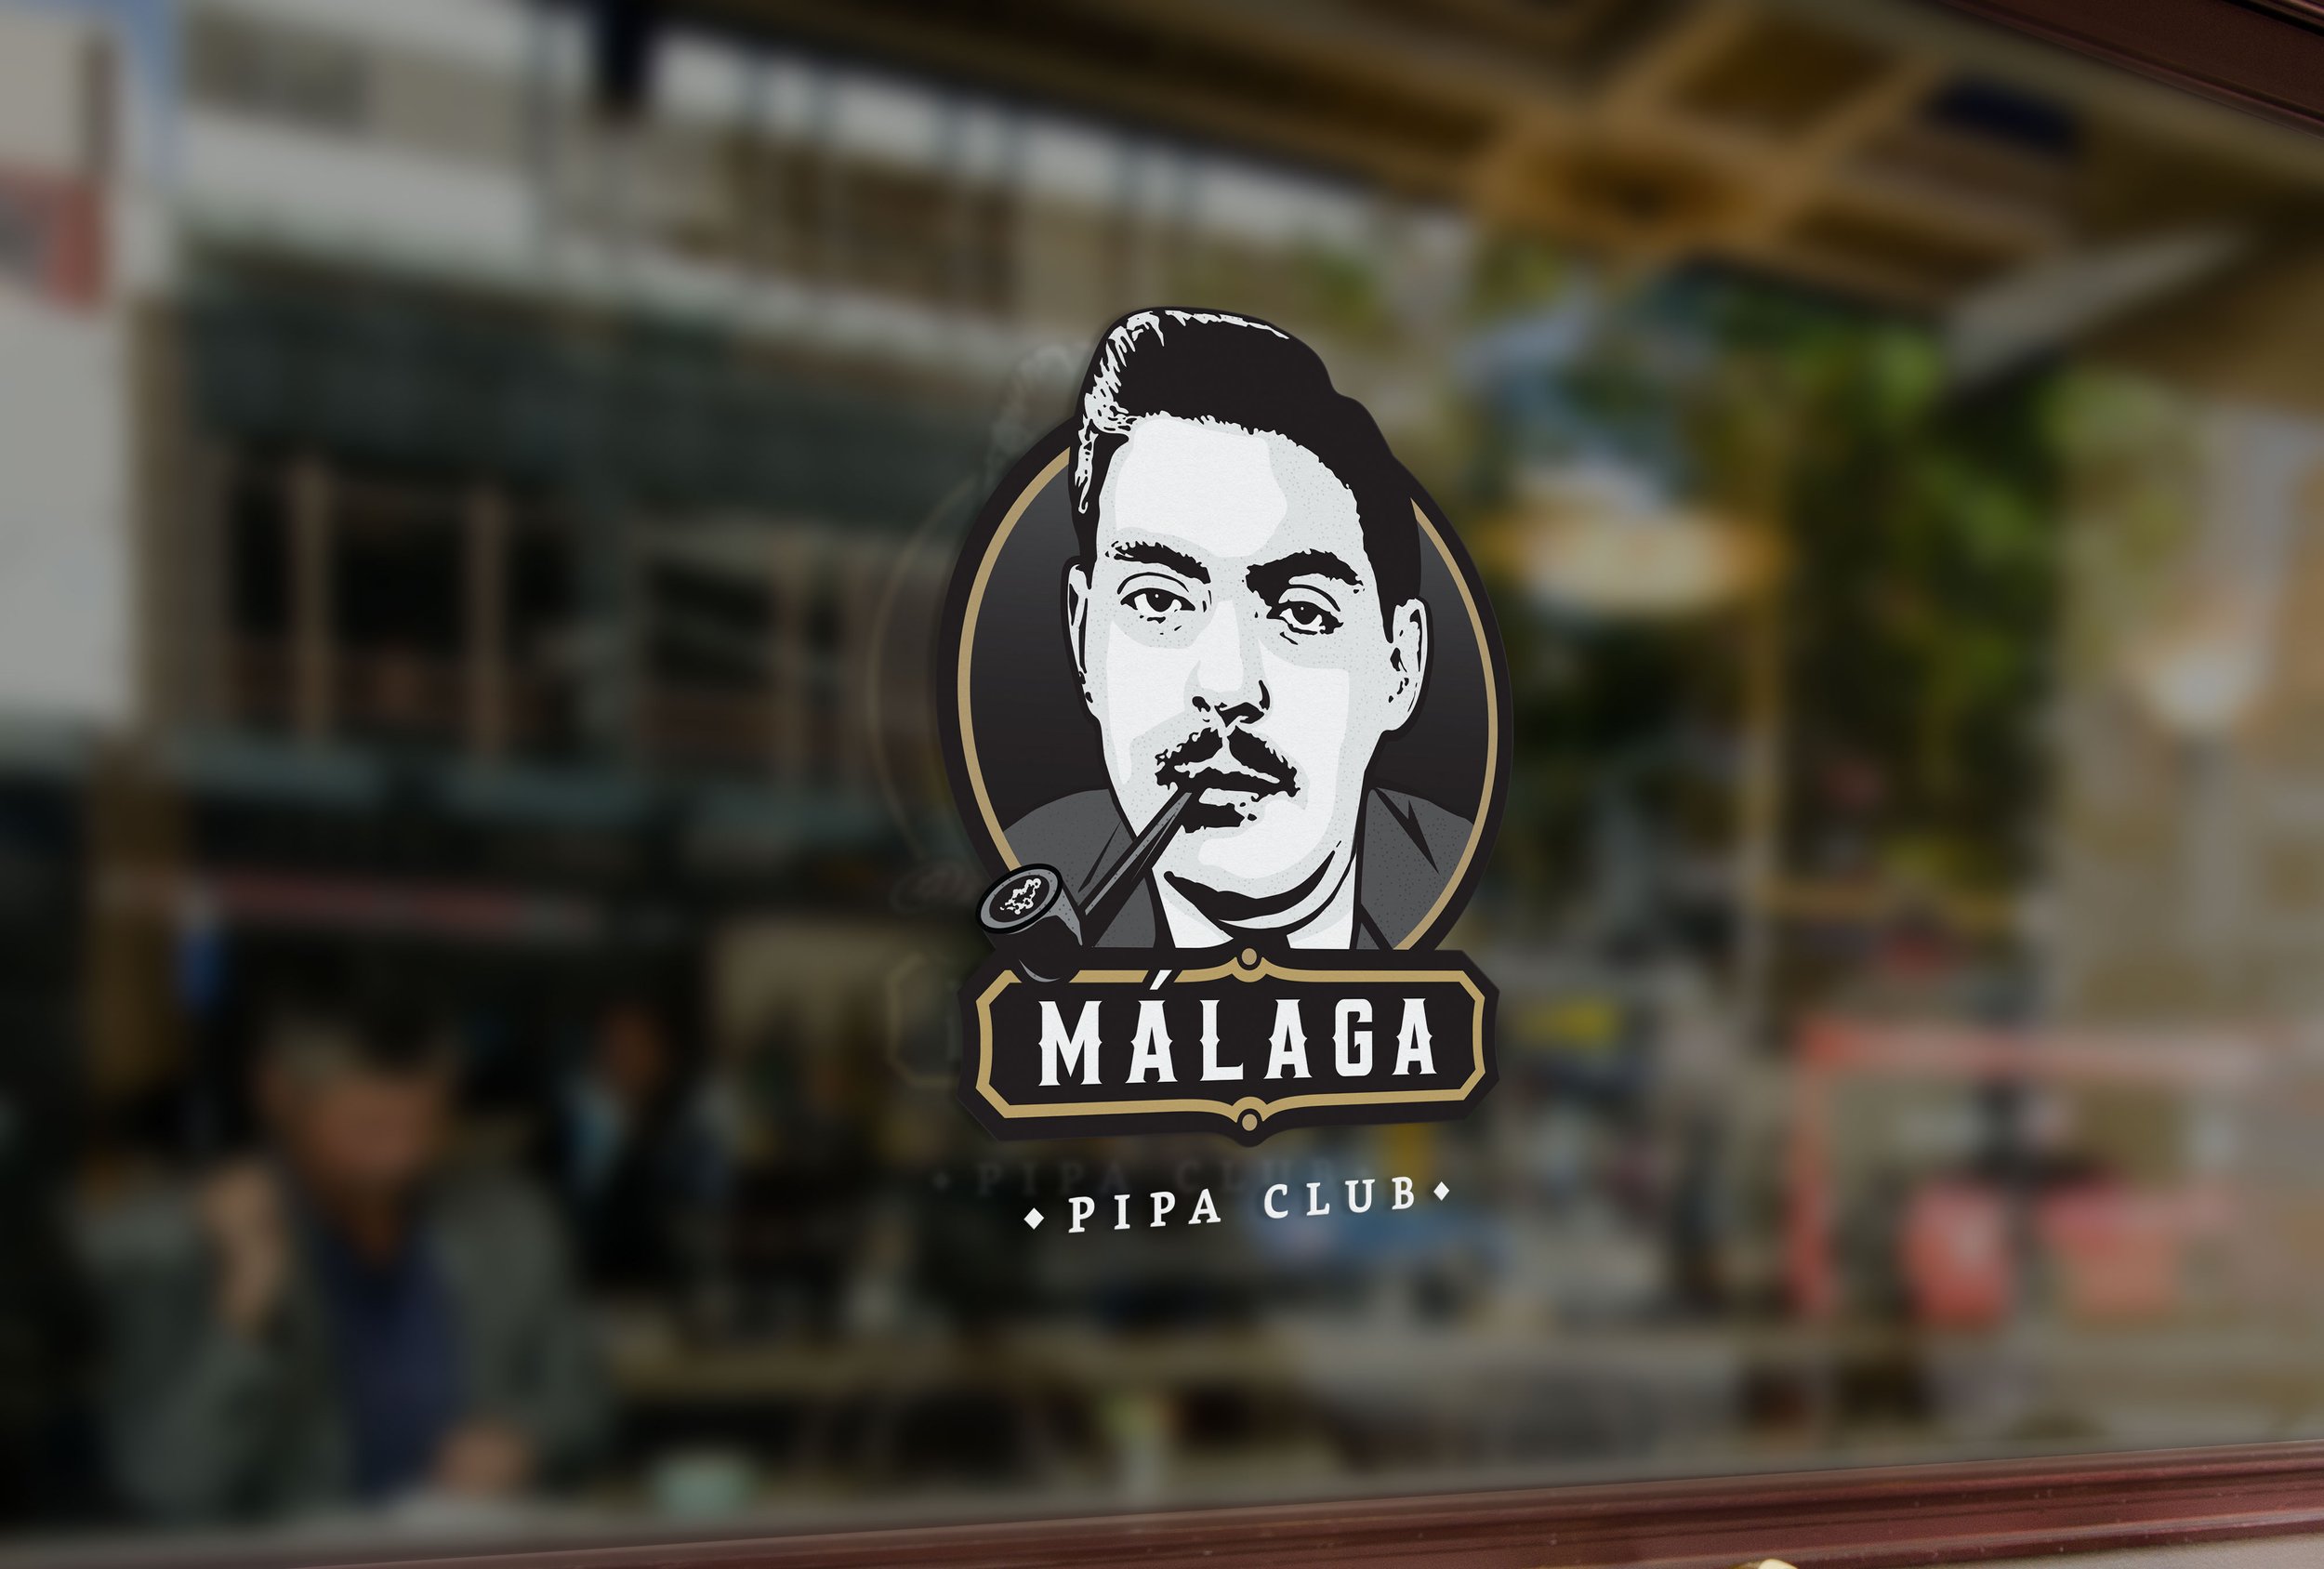 BRANDING FOR MALAGA PIPA CLUB